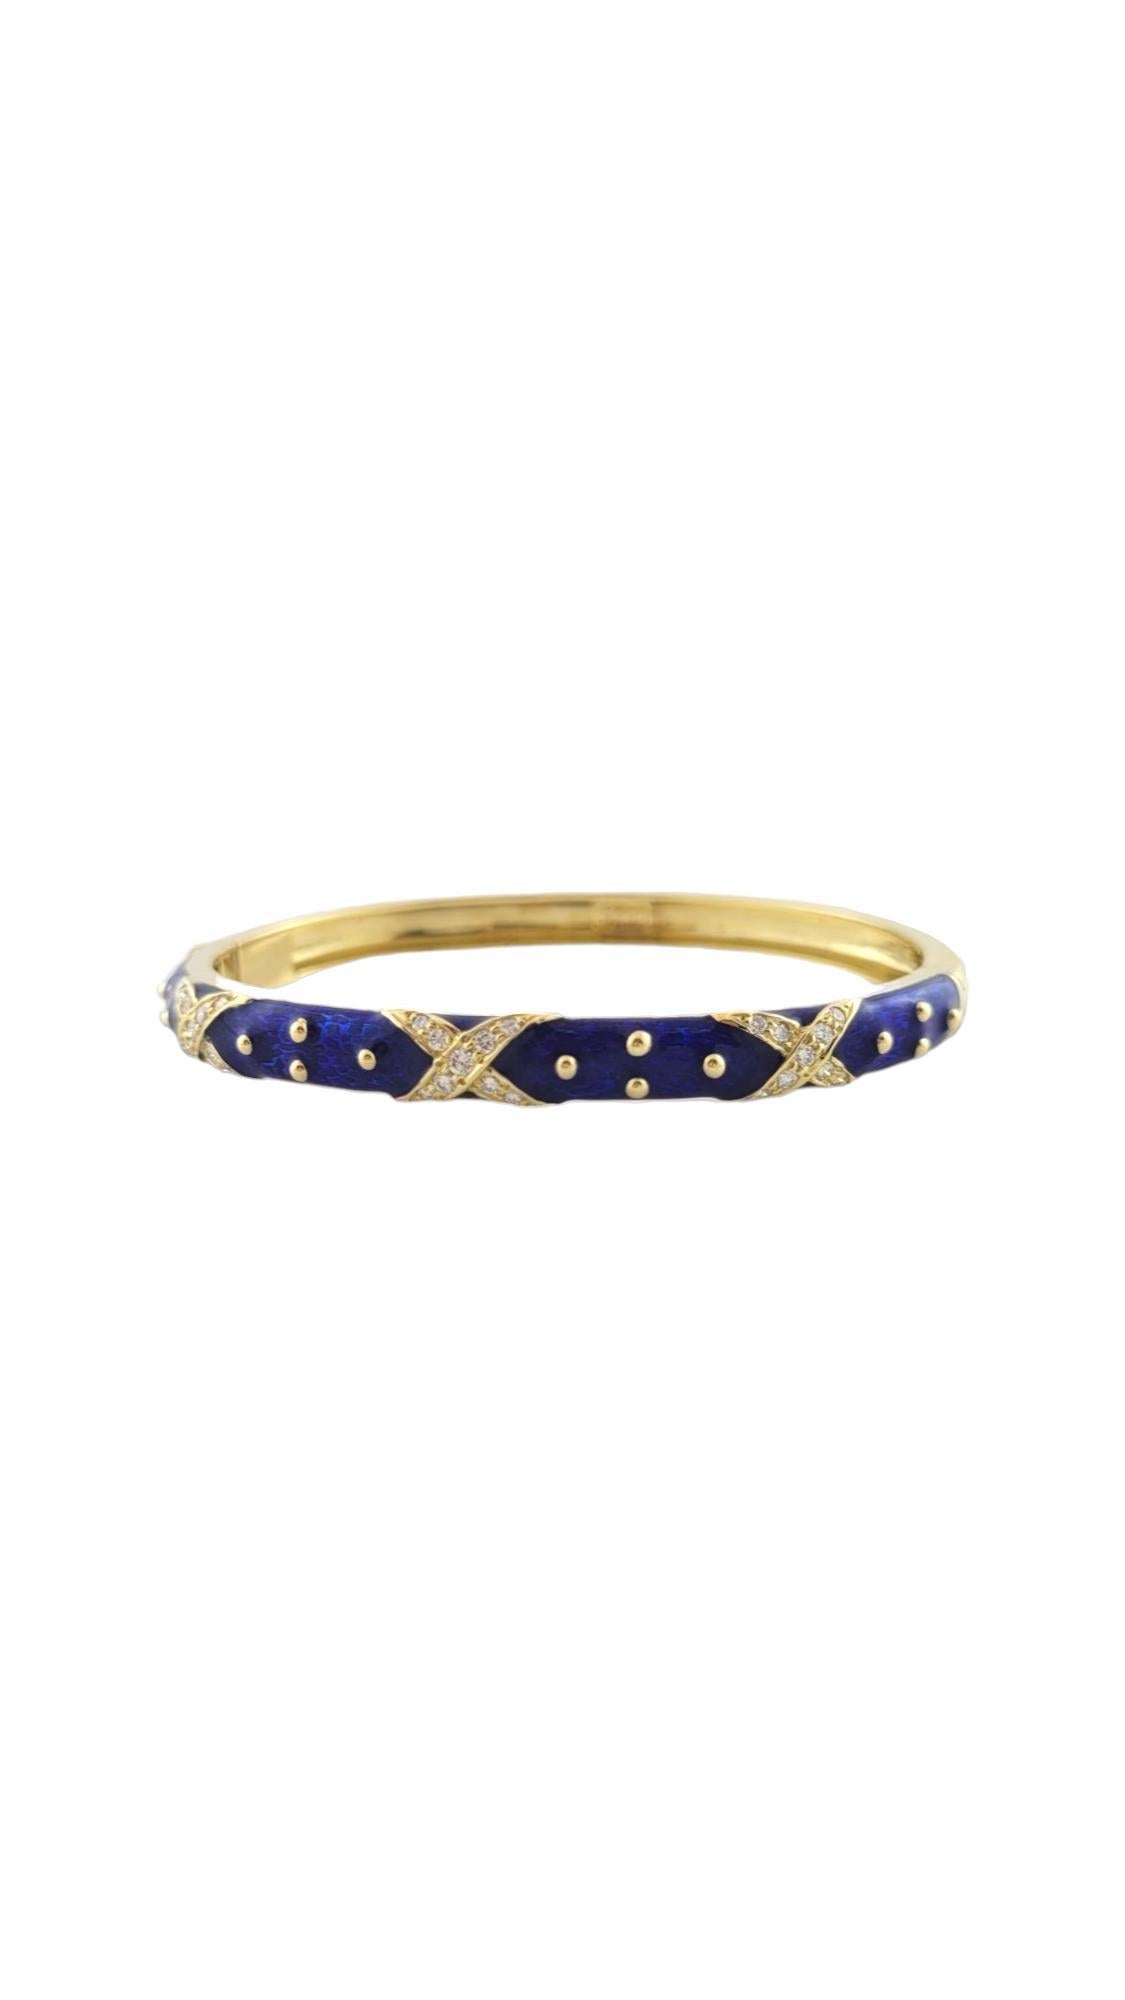 Bracelet à charnière Hidalgo en or jaune 18K, émail bleu, diamant X

Bracelet à charnière en or jaune 18 carats, orné de diamants en forme de 